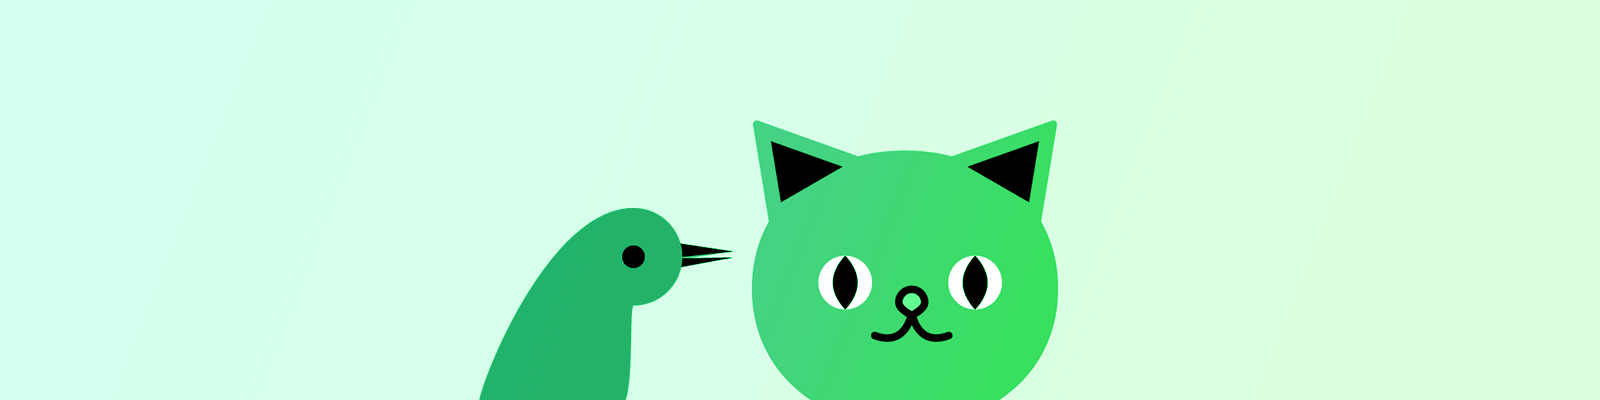 Flashing cat bird green